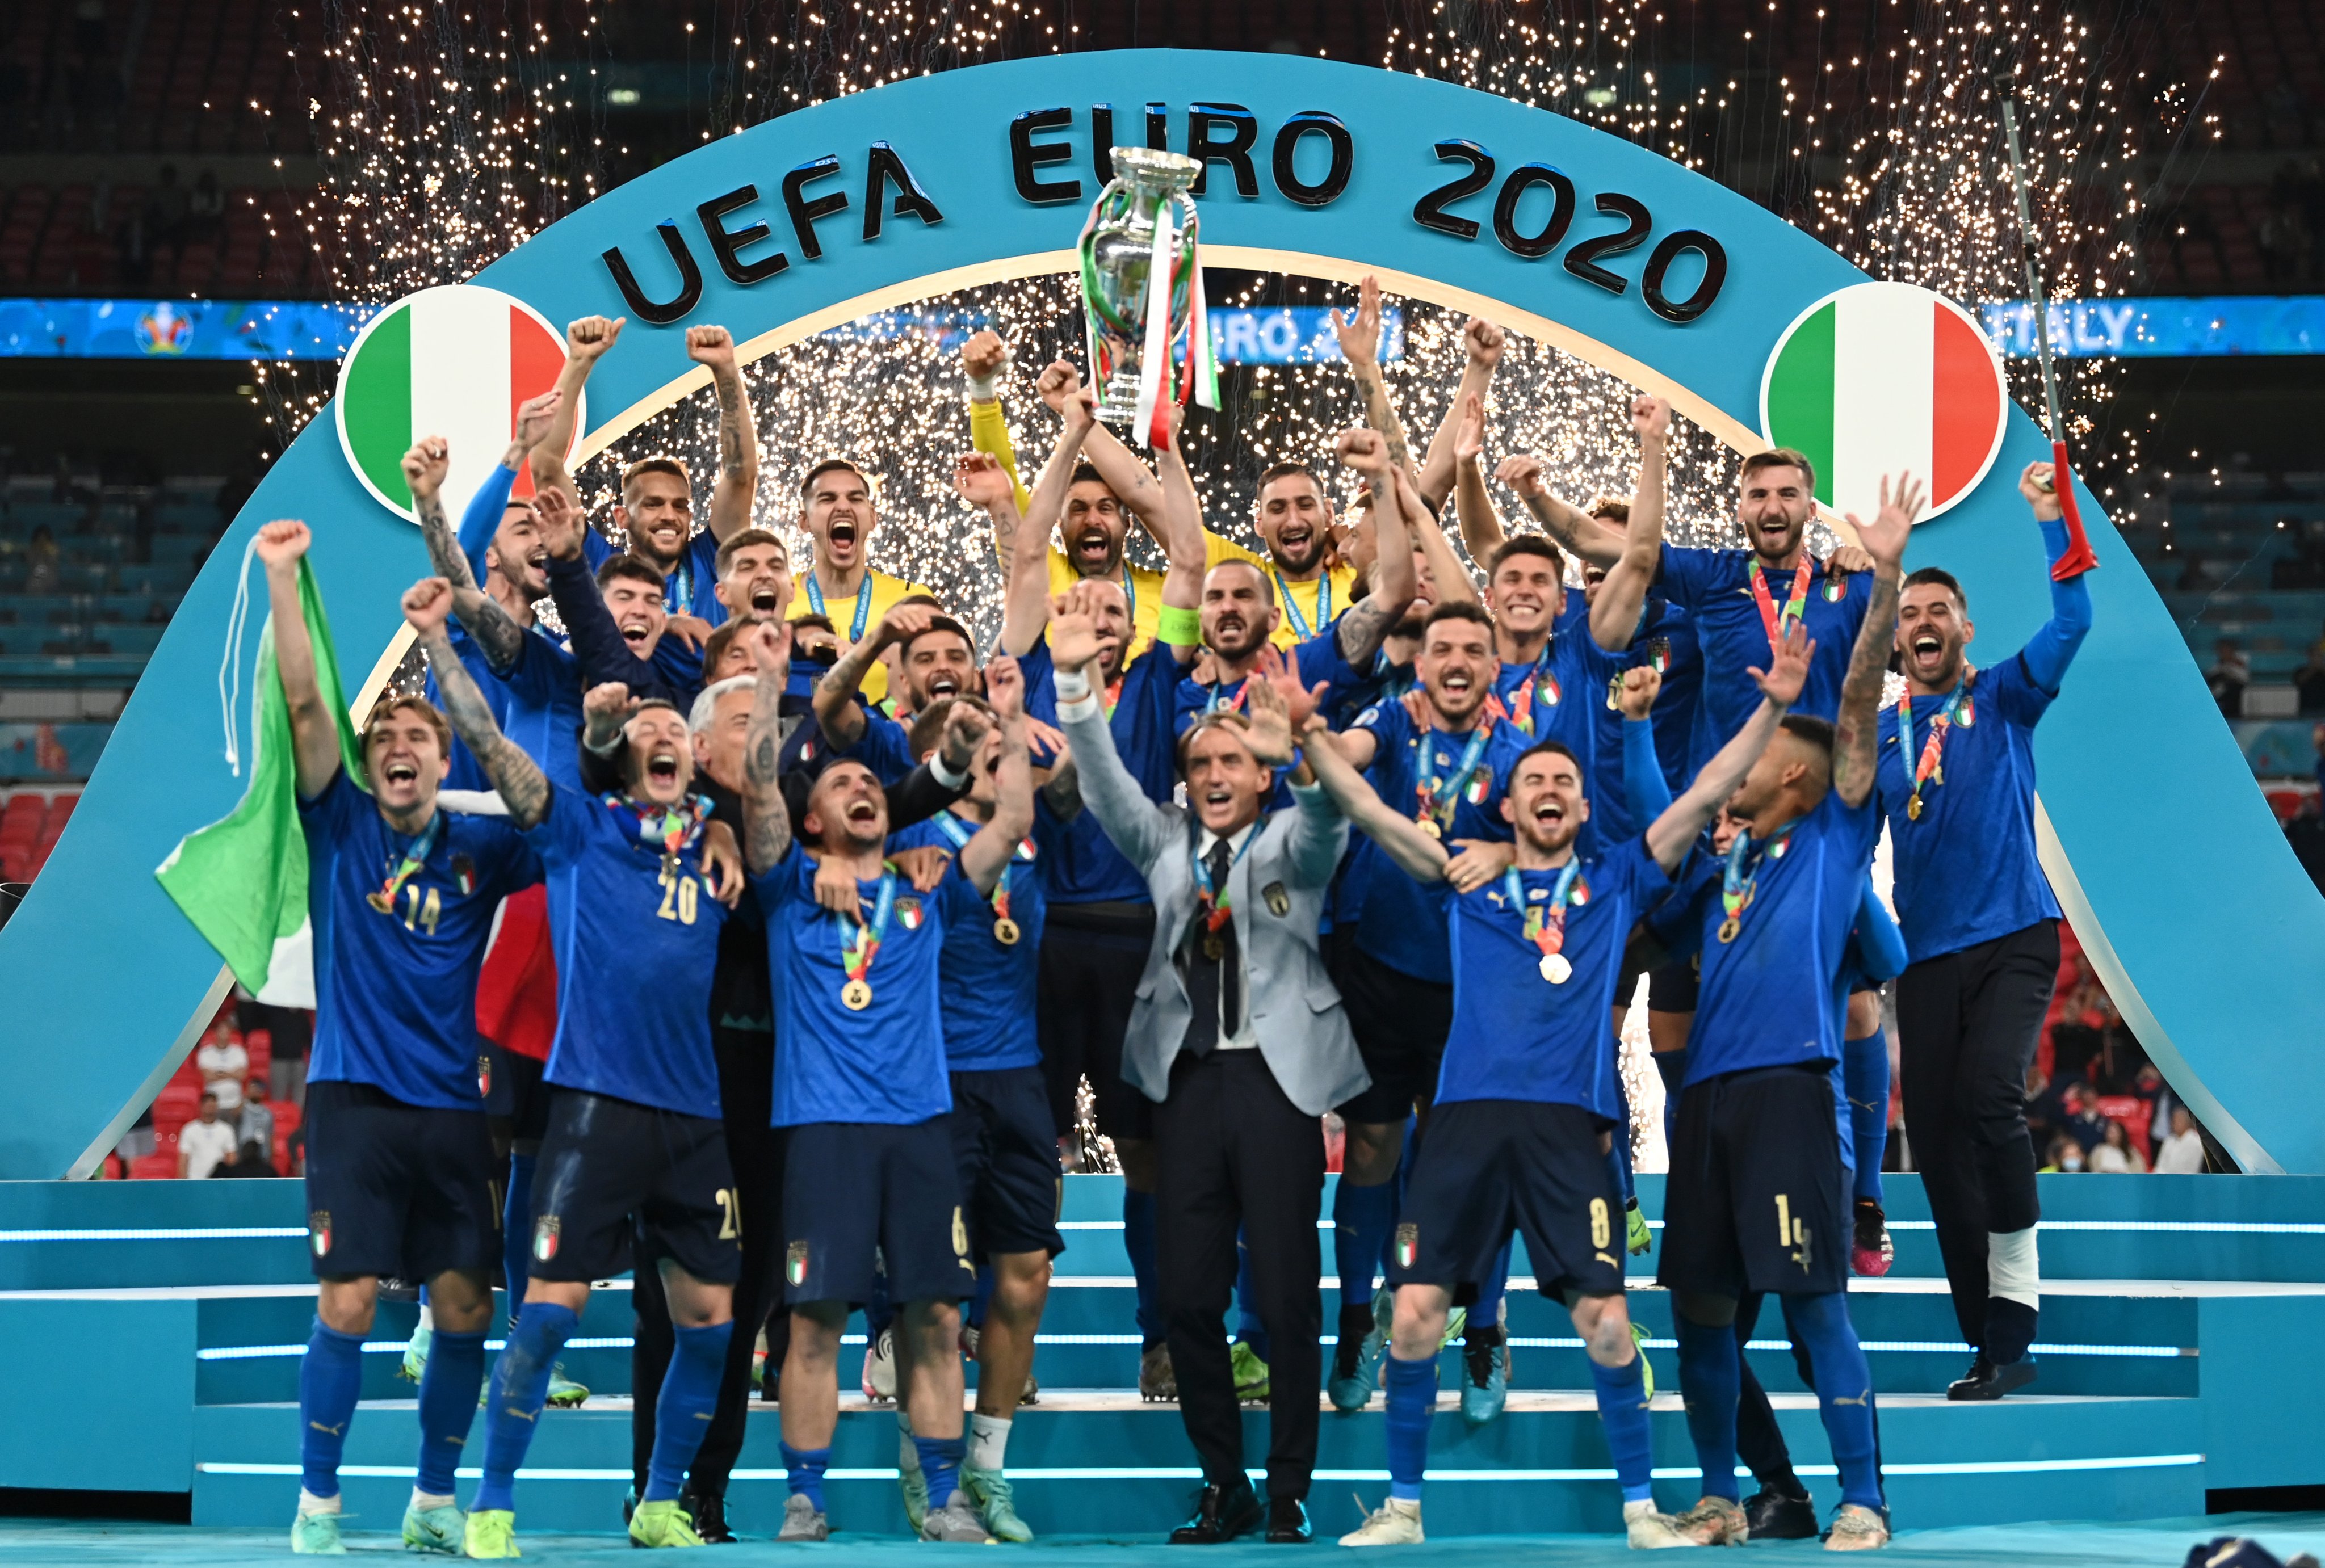 Football is Coming to Rome! Italia Juara Euro 2020